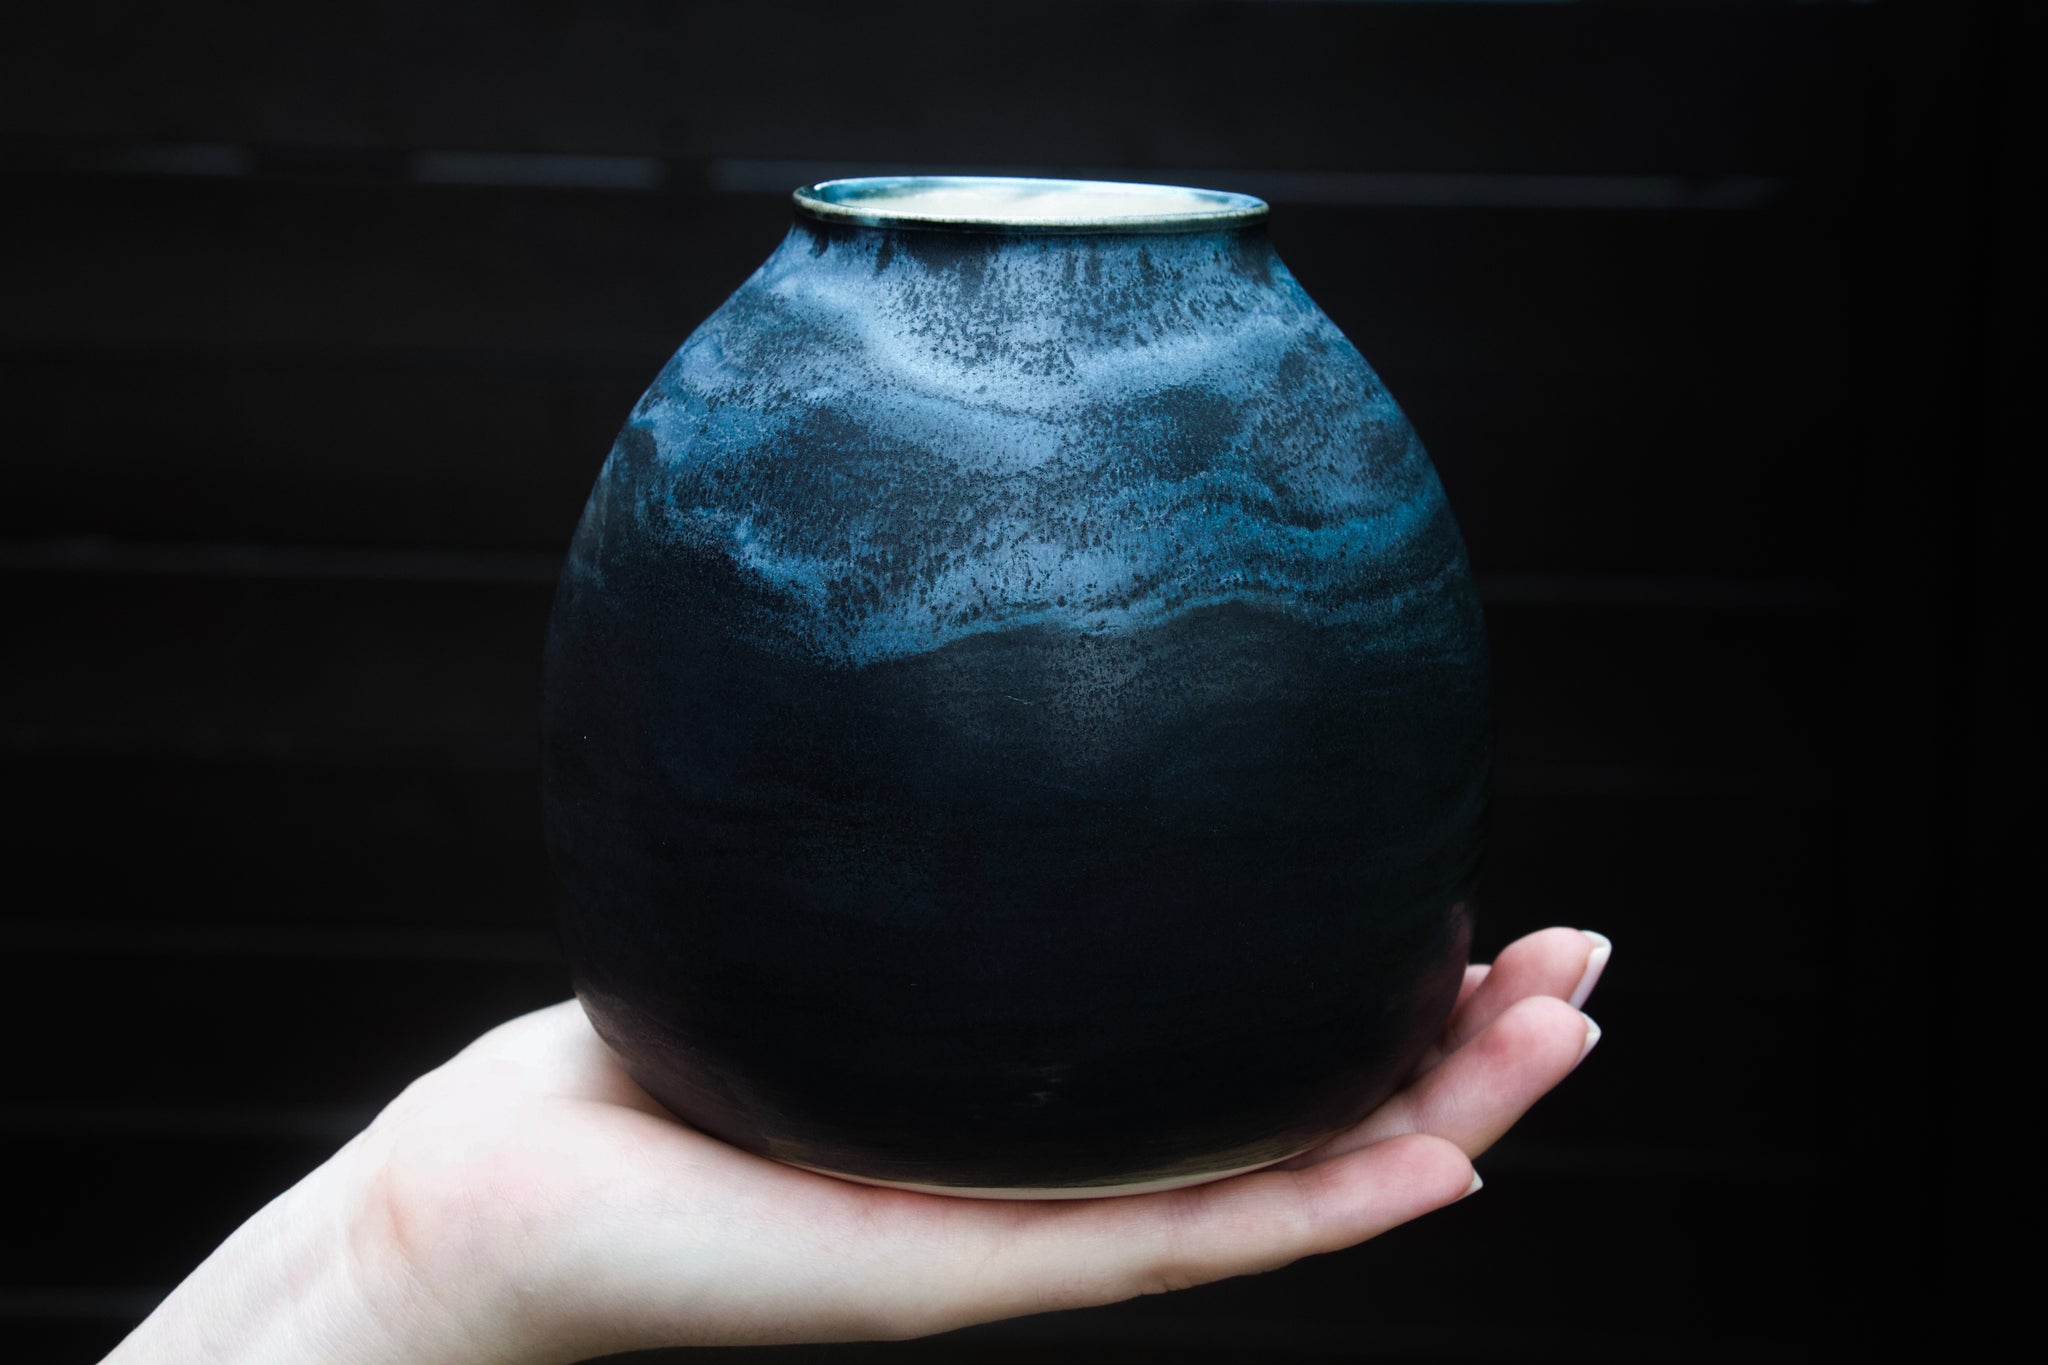 Deep Ocean Vase